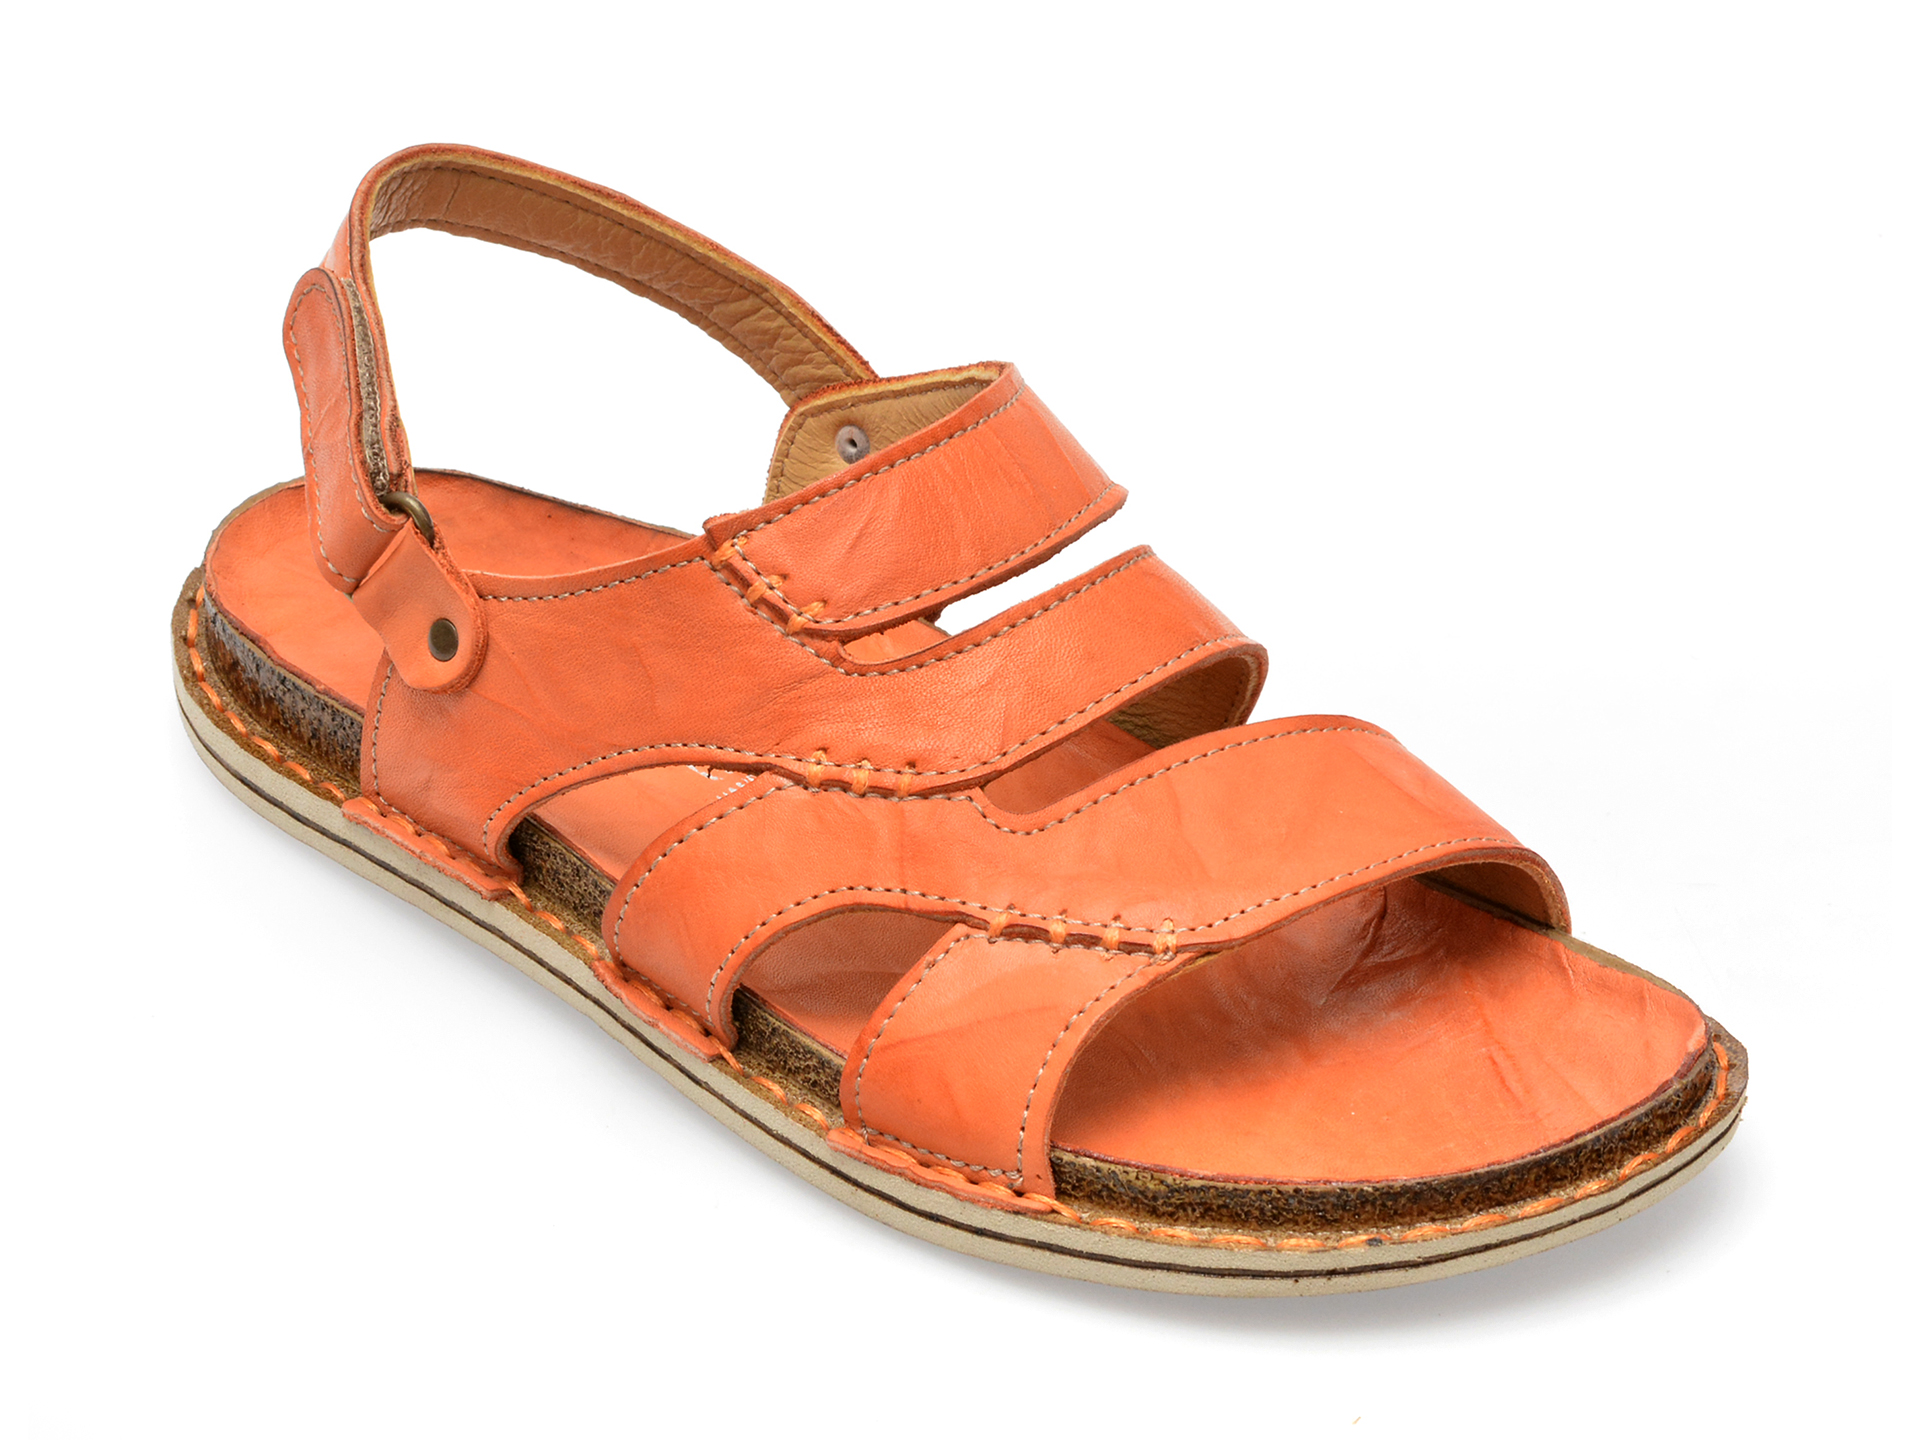 Sandale FLAVIA PASSINI portocalii, 1274, din piele naturala